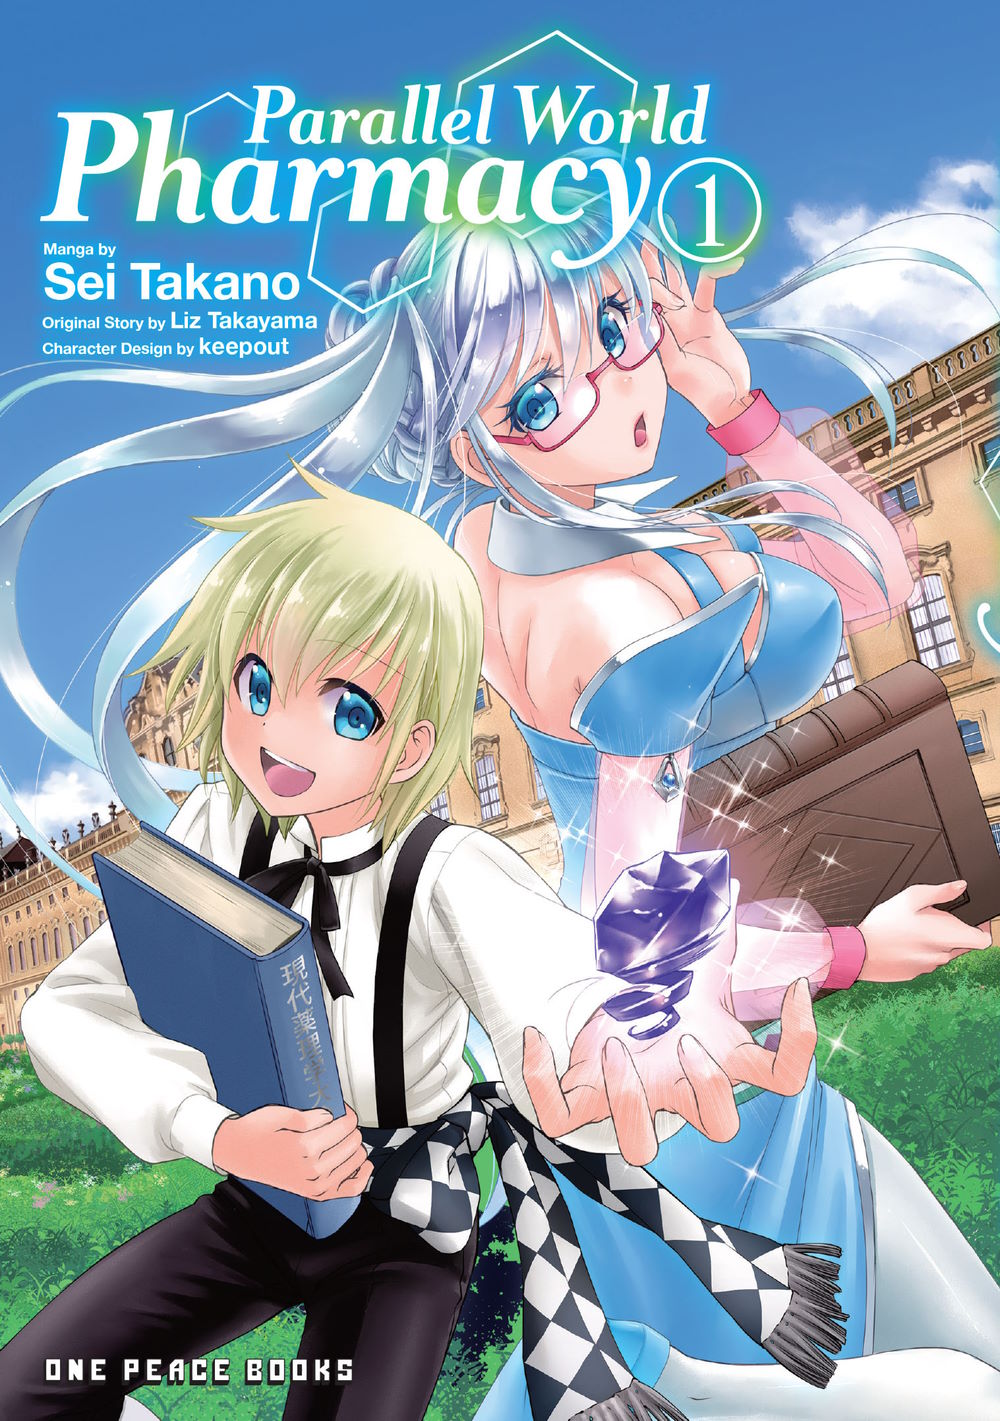 Parallel World Pharmacy Manga Volume 2 | RightStuf